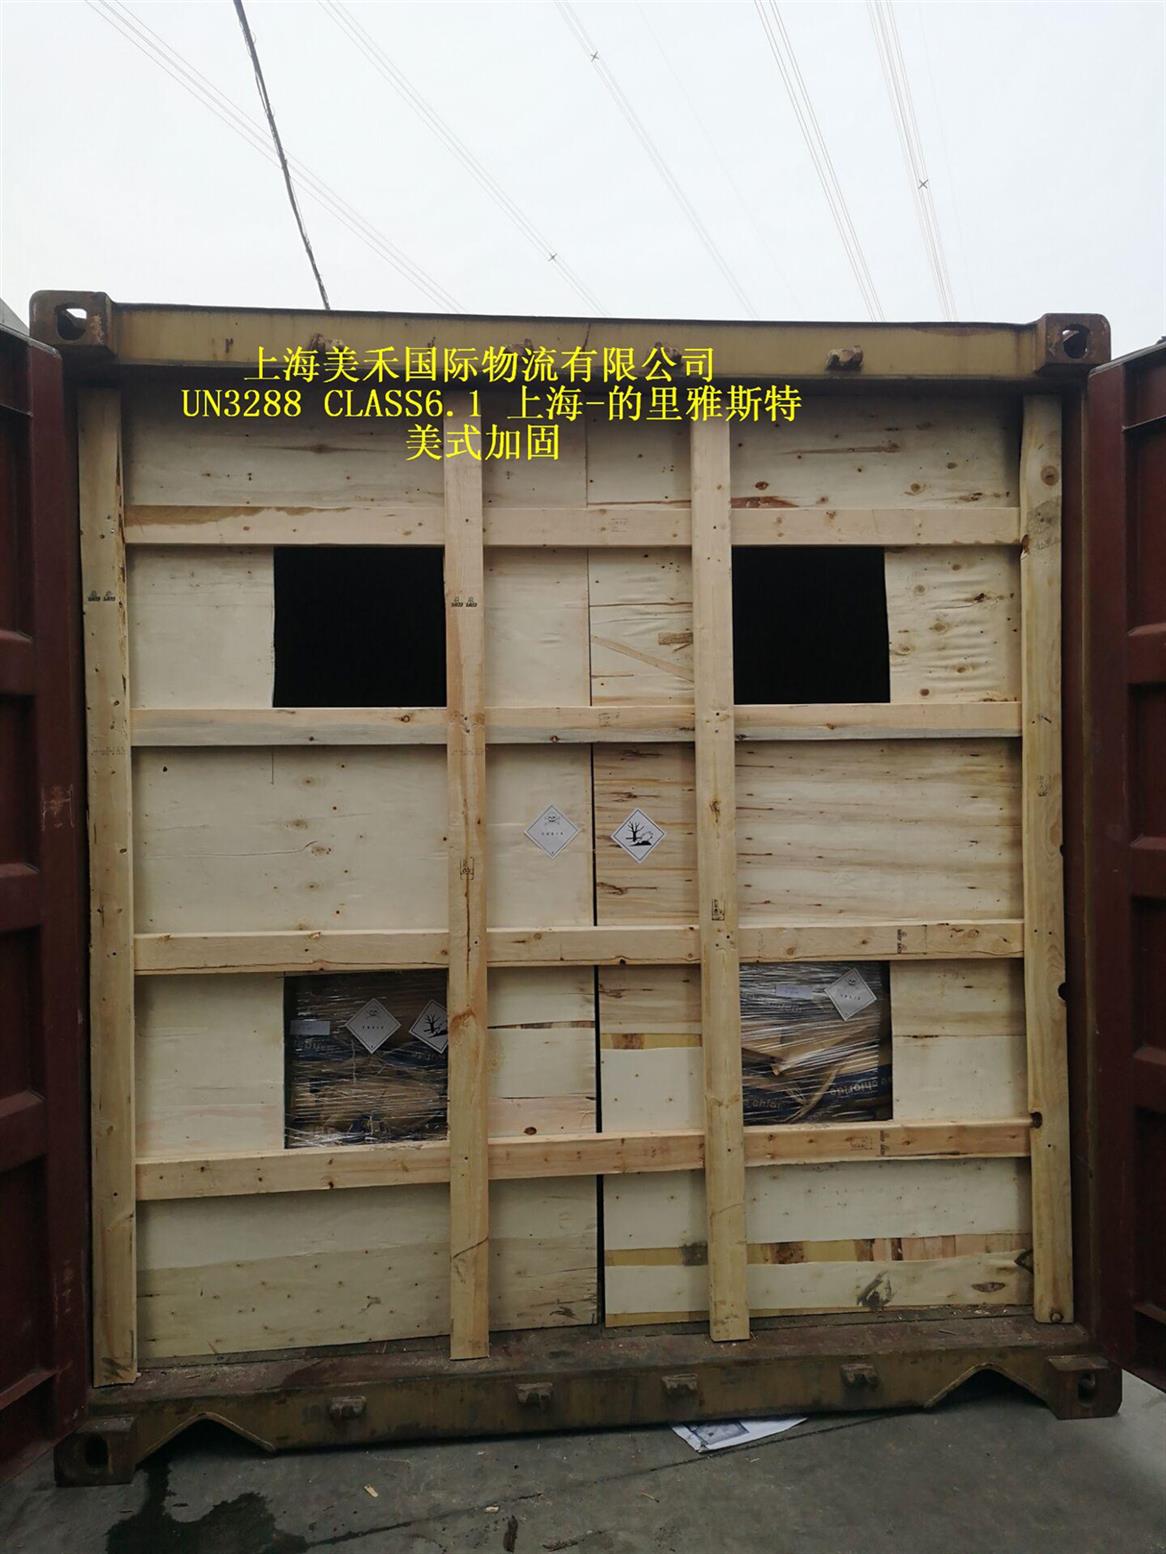 上海化工品拼箱海运流程 海运物流 海运服务